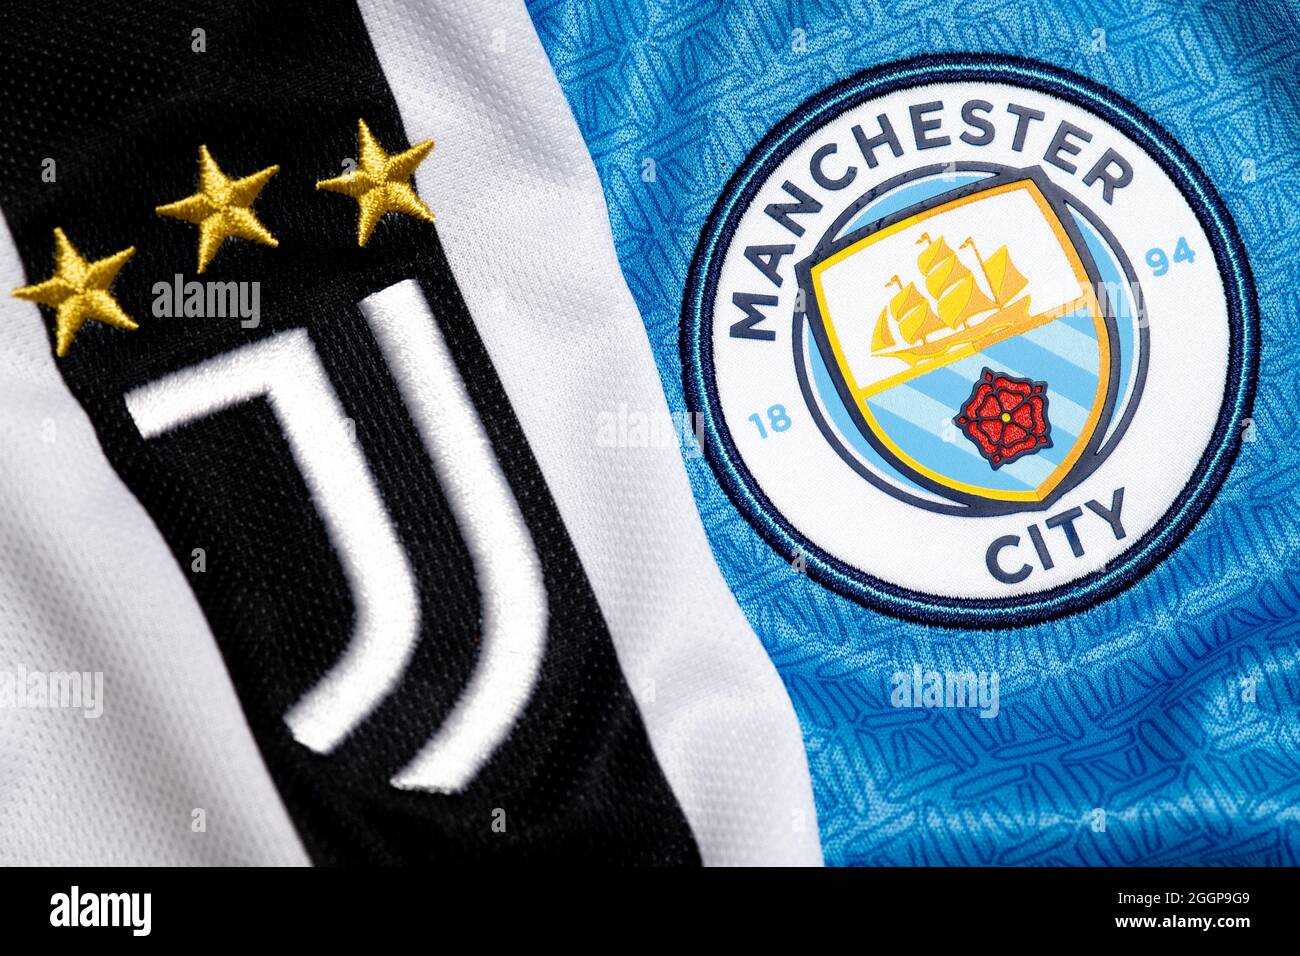 Primo piano dello stemma Juventus & Manchester City. Foto Stock